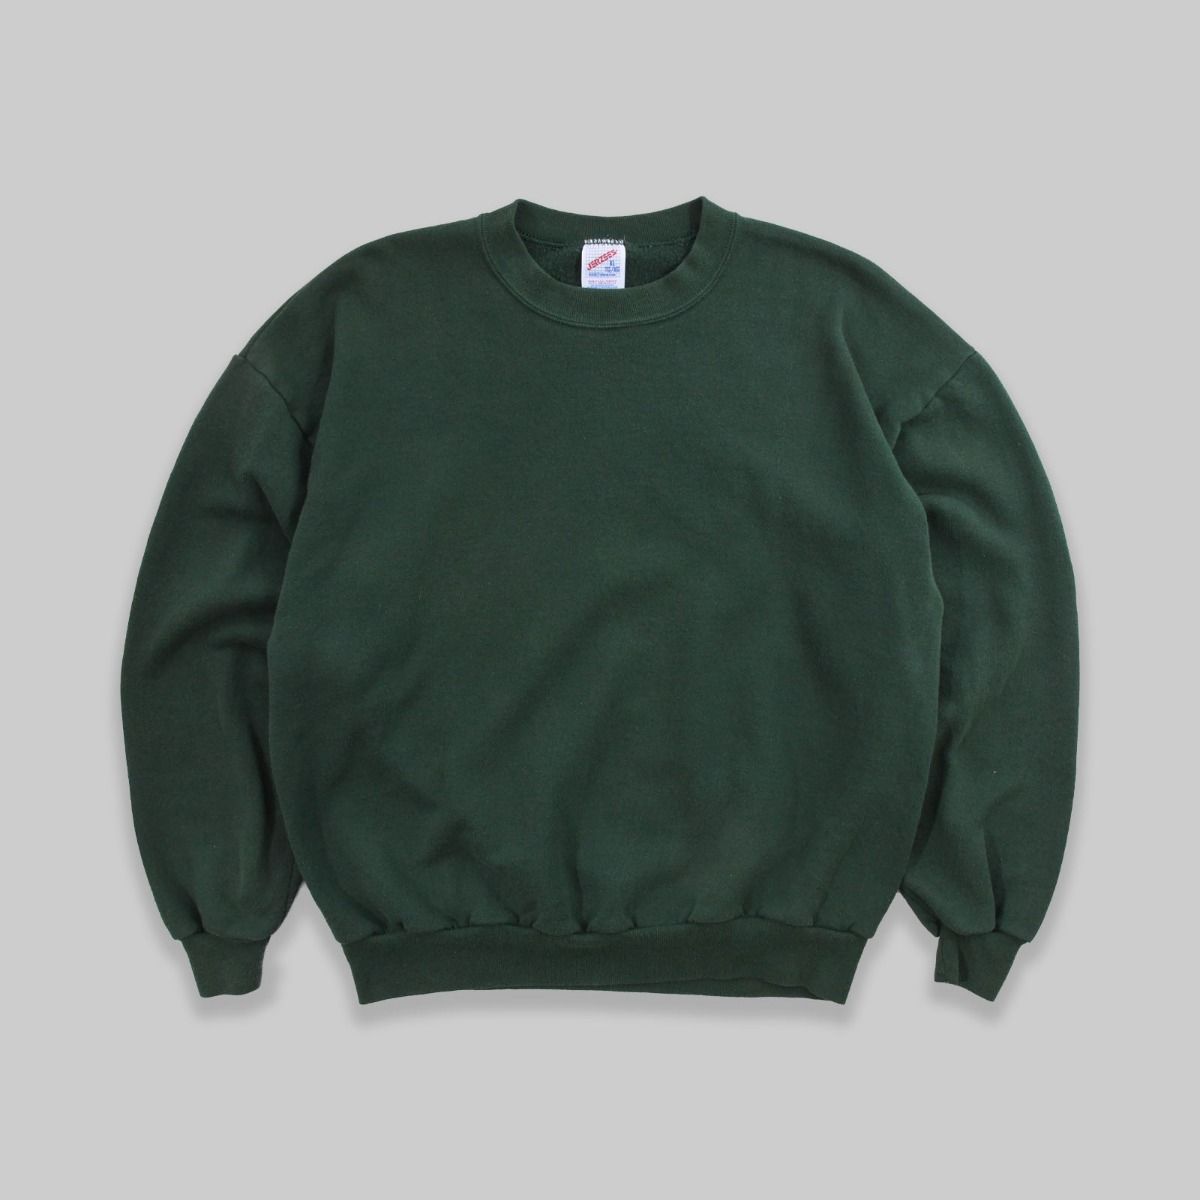 Jerzees 1990s Blank Green Sweatshirt